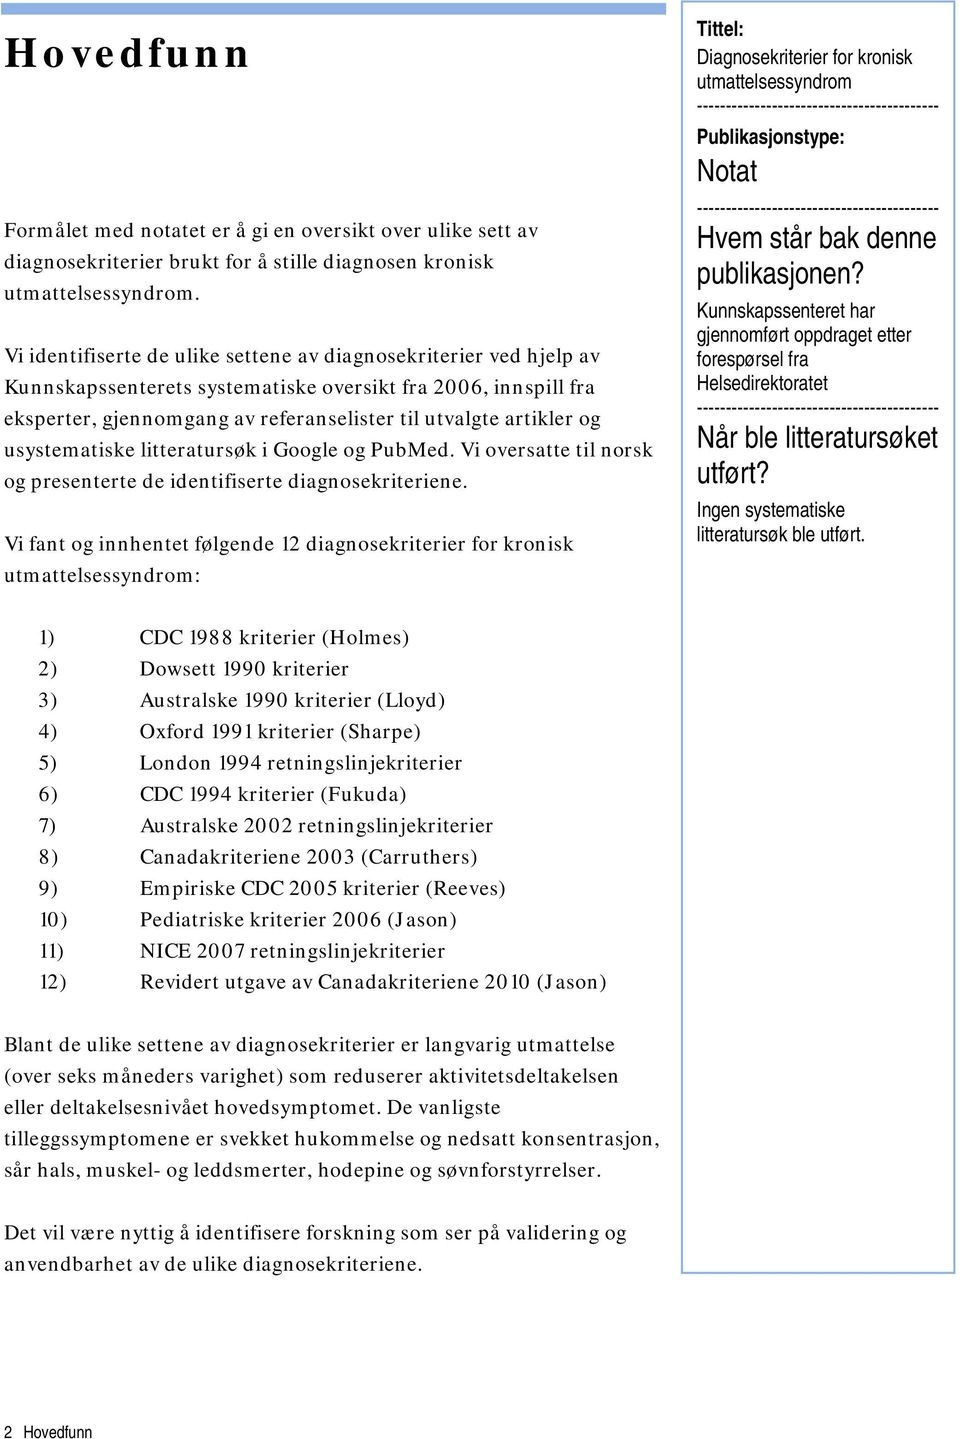 usystematiske litteratursøk i Google og PubMed. Vi oversatte til norsk og presenterte de identifiserte diagnosekriteriene.